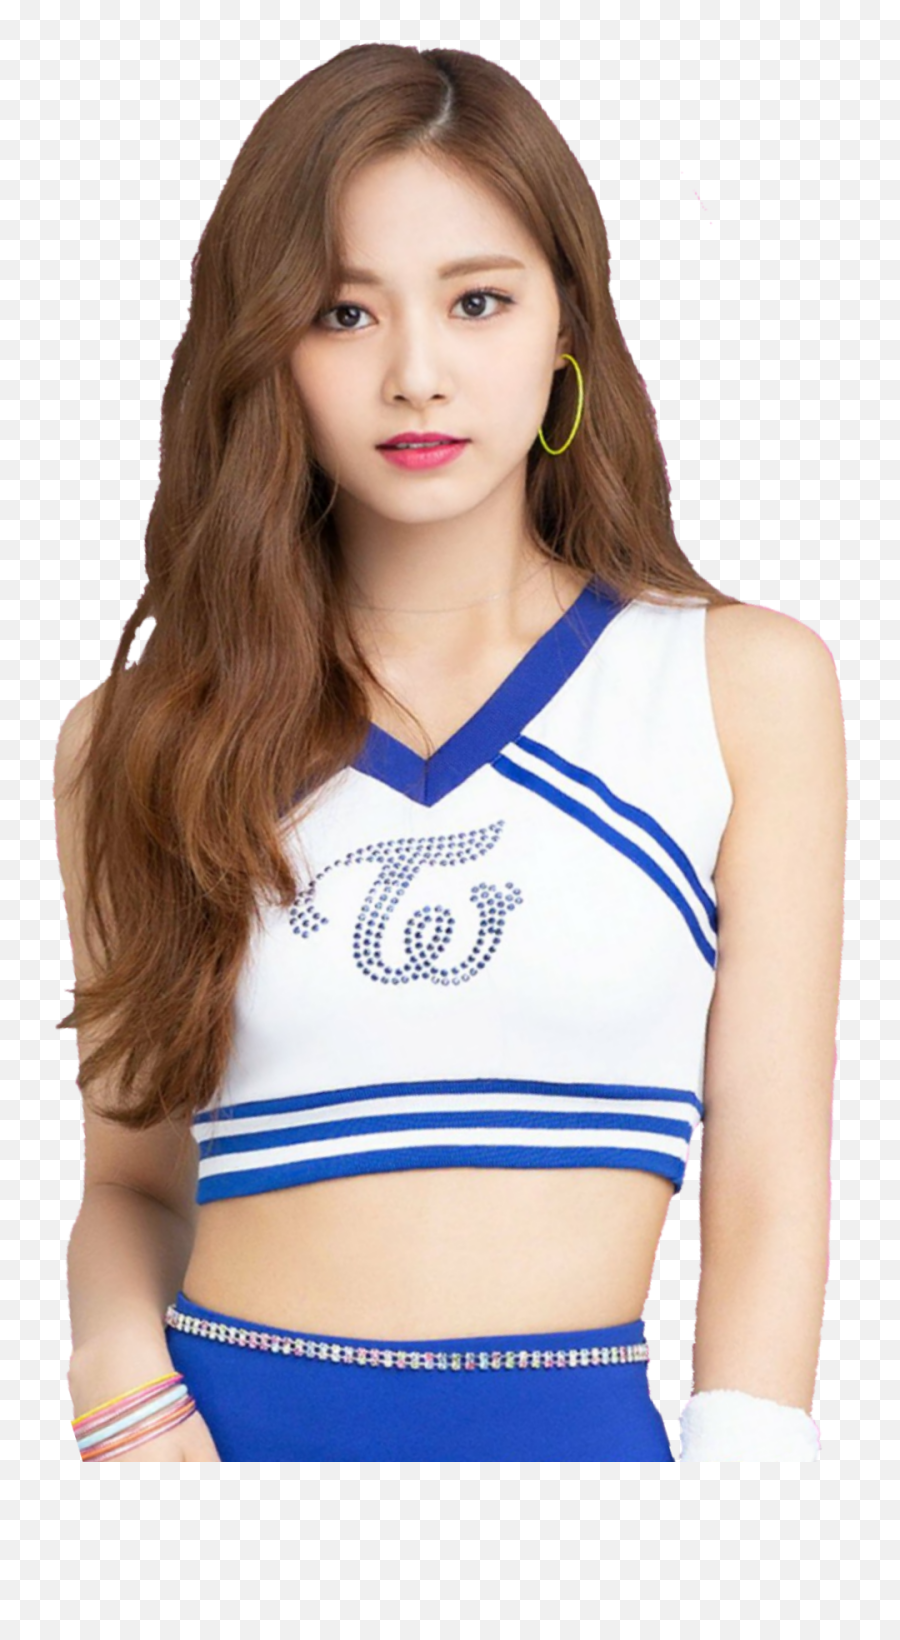 The Most Edited Cheerleader Picsart - Tzuyu Cheerleader Emoji,Cheerlead Emoticons